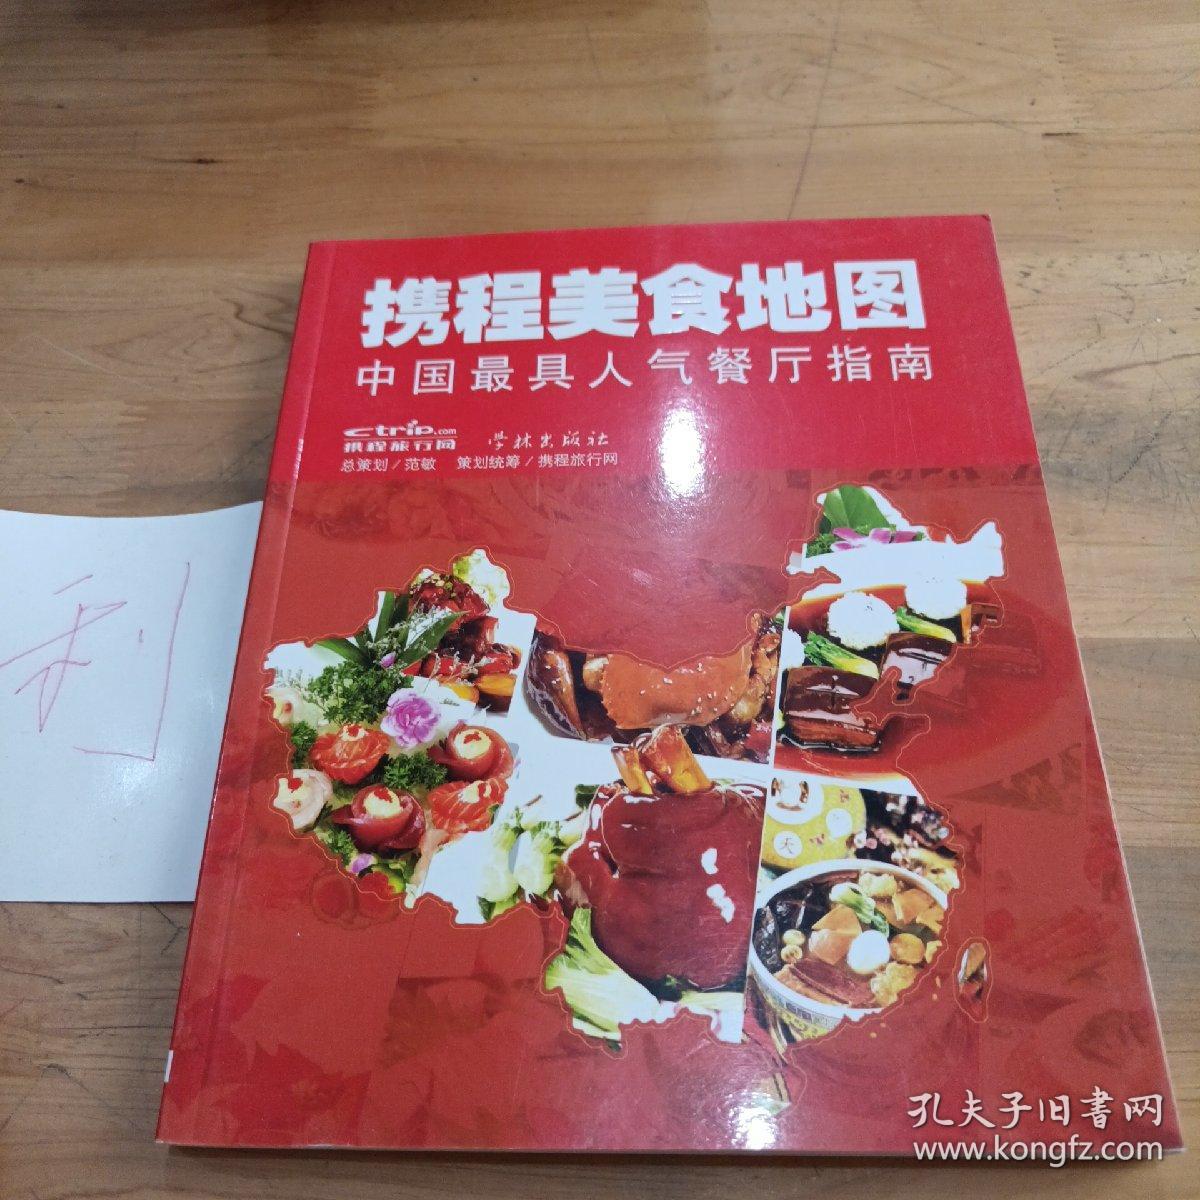 携程美食地图--中国最具人气餐厅指南